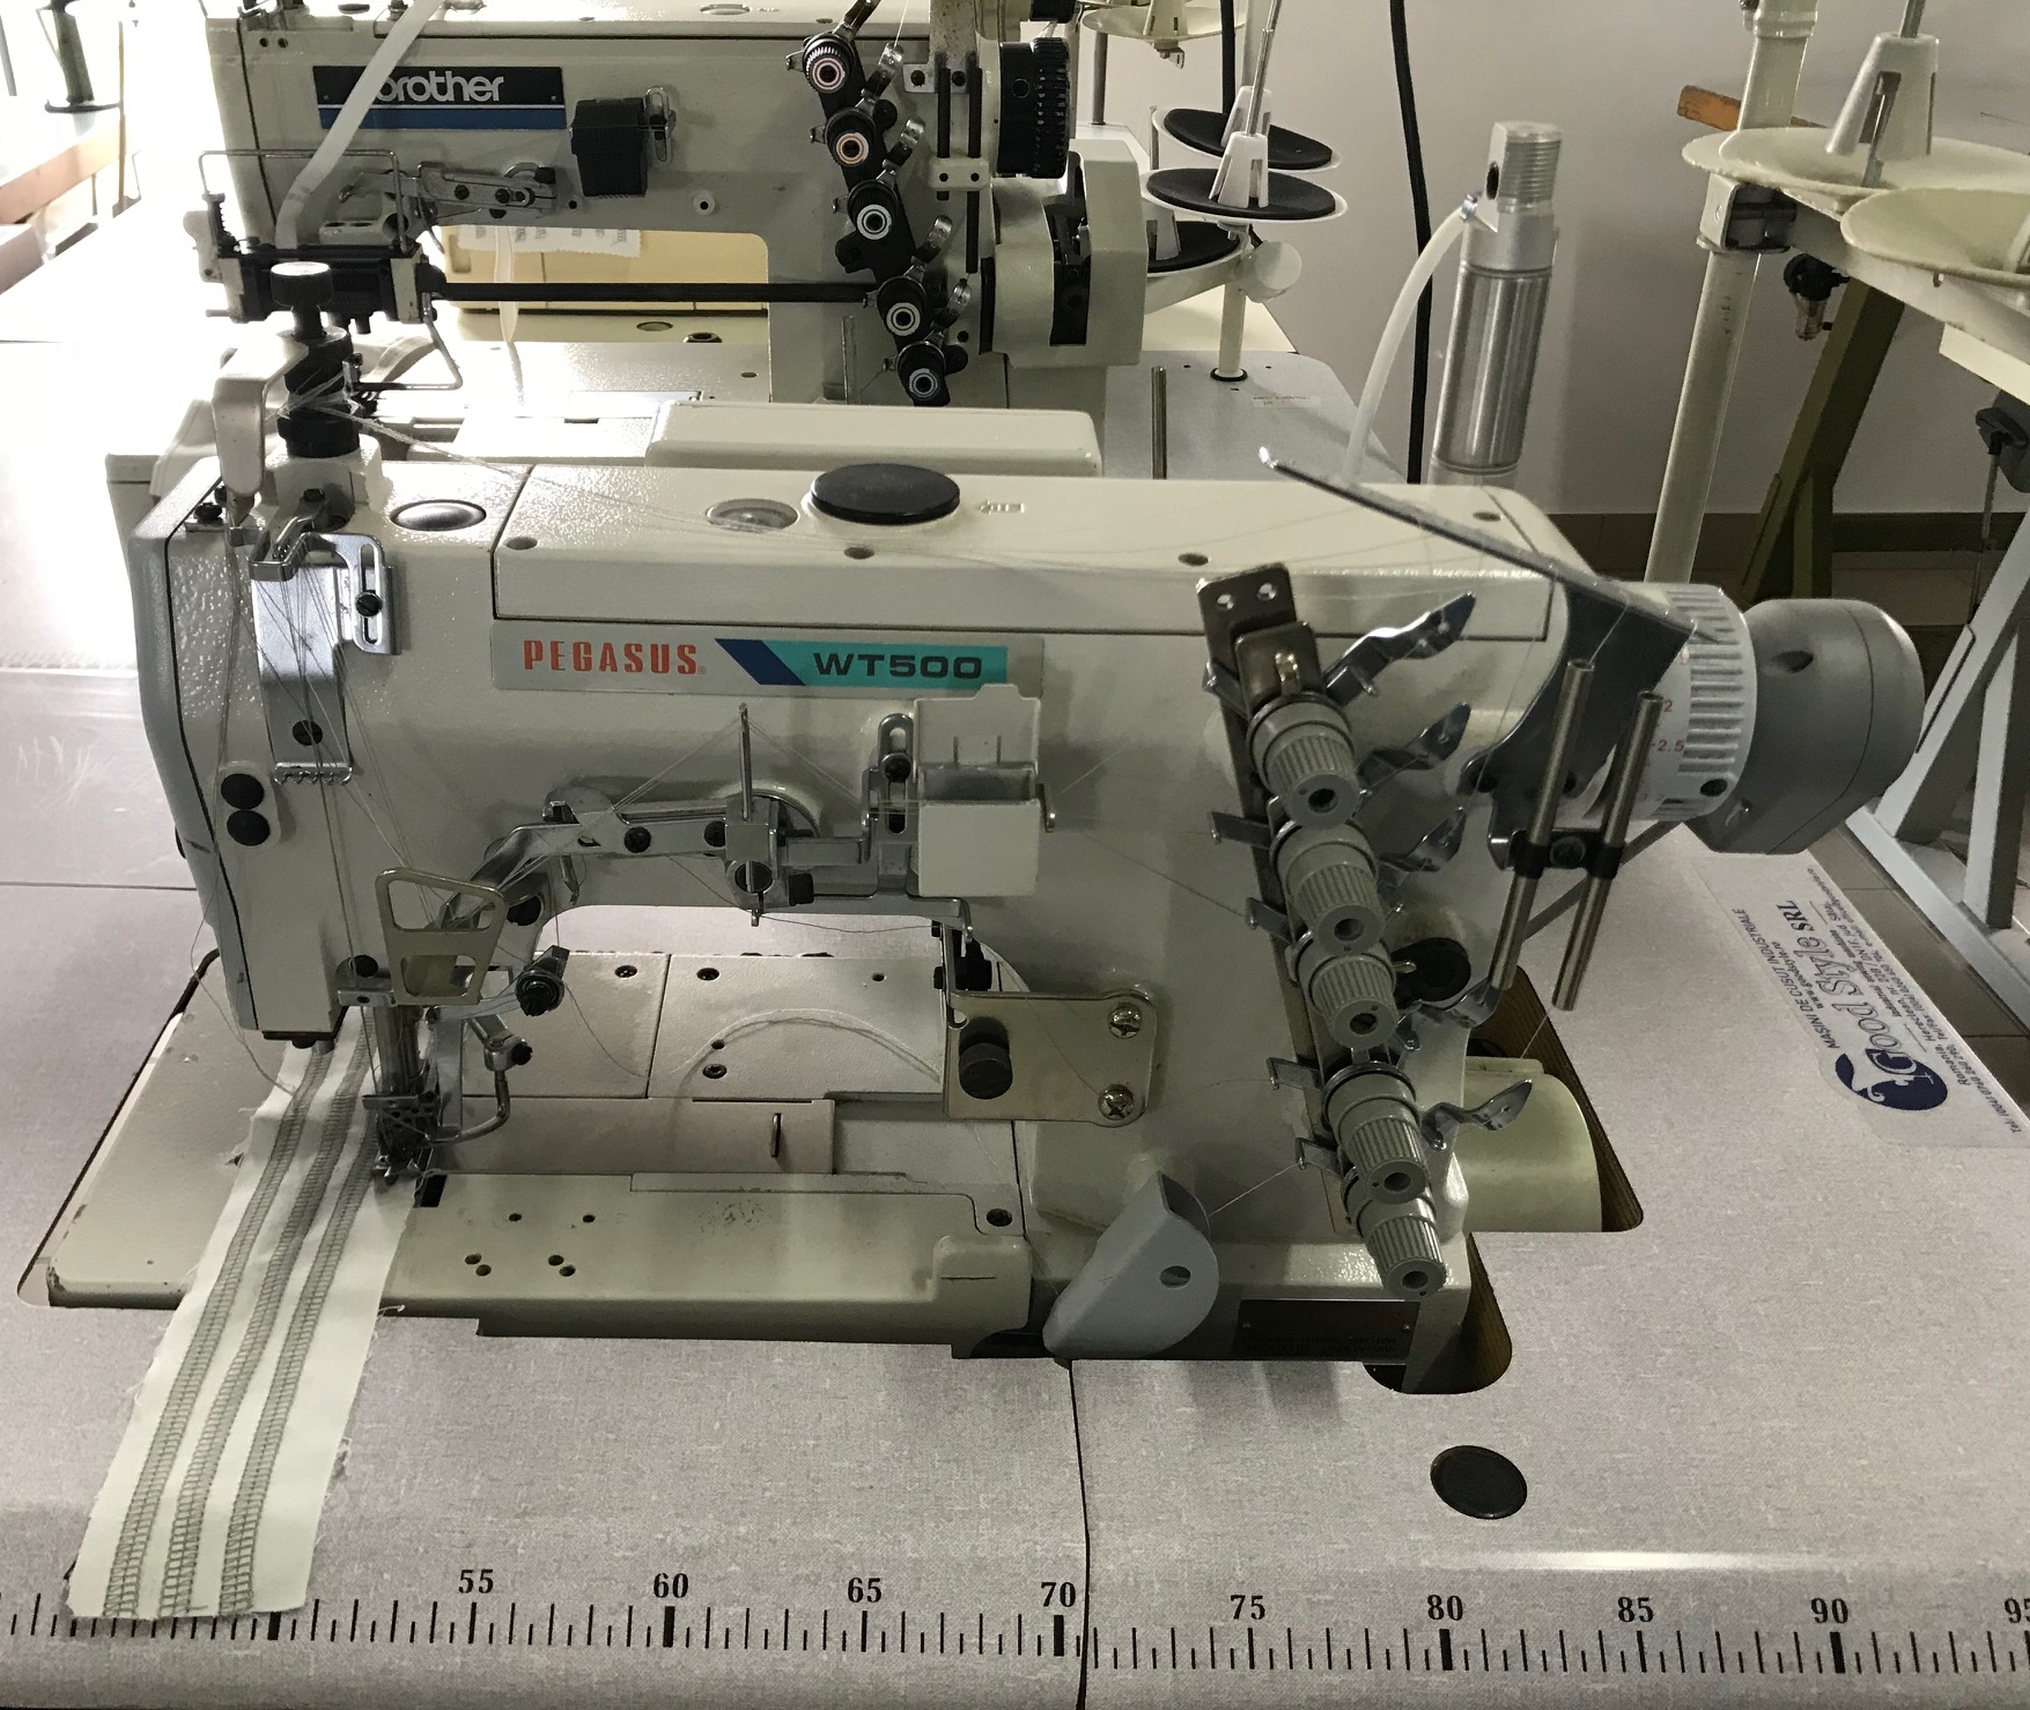 PEGASUS W562 Interock Sewing Machine 